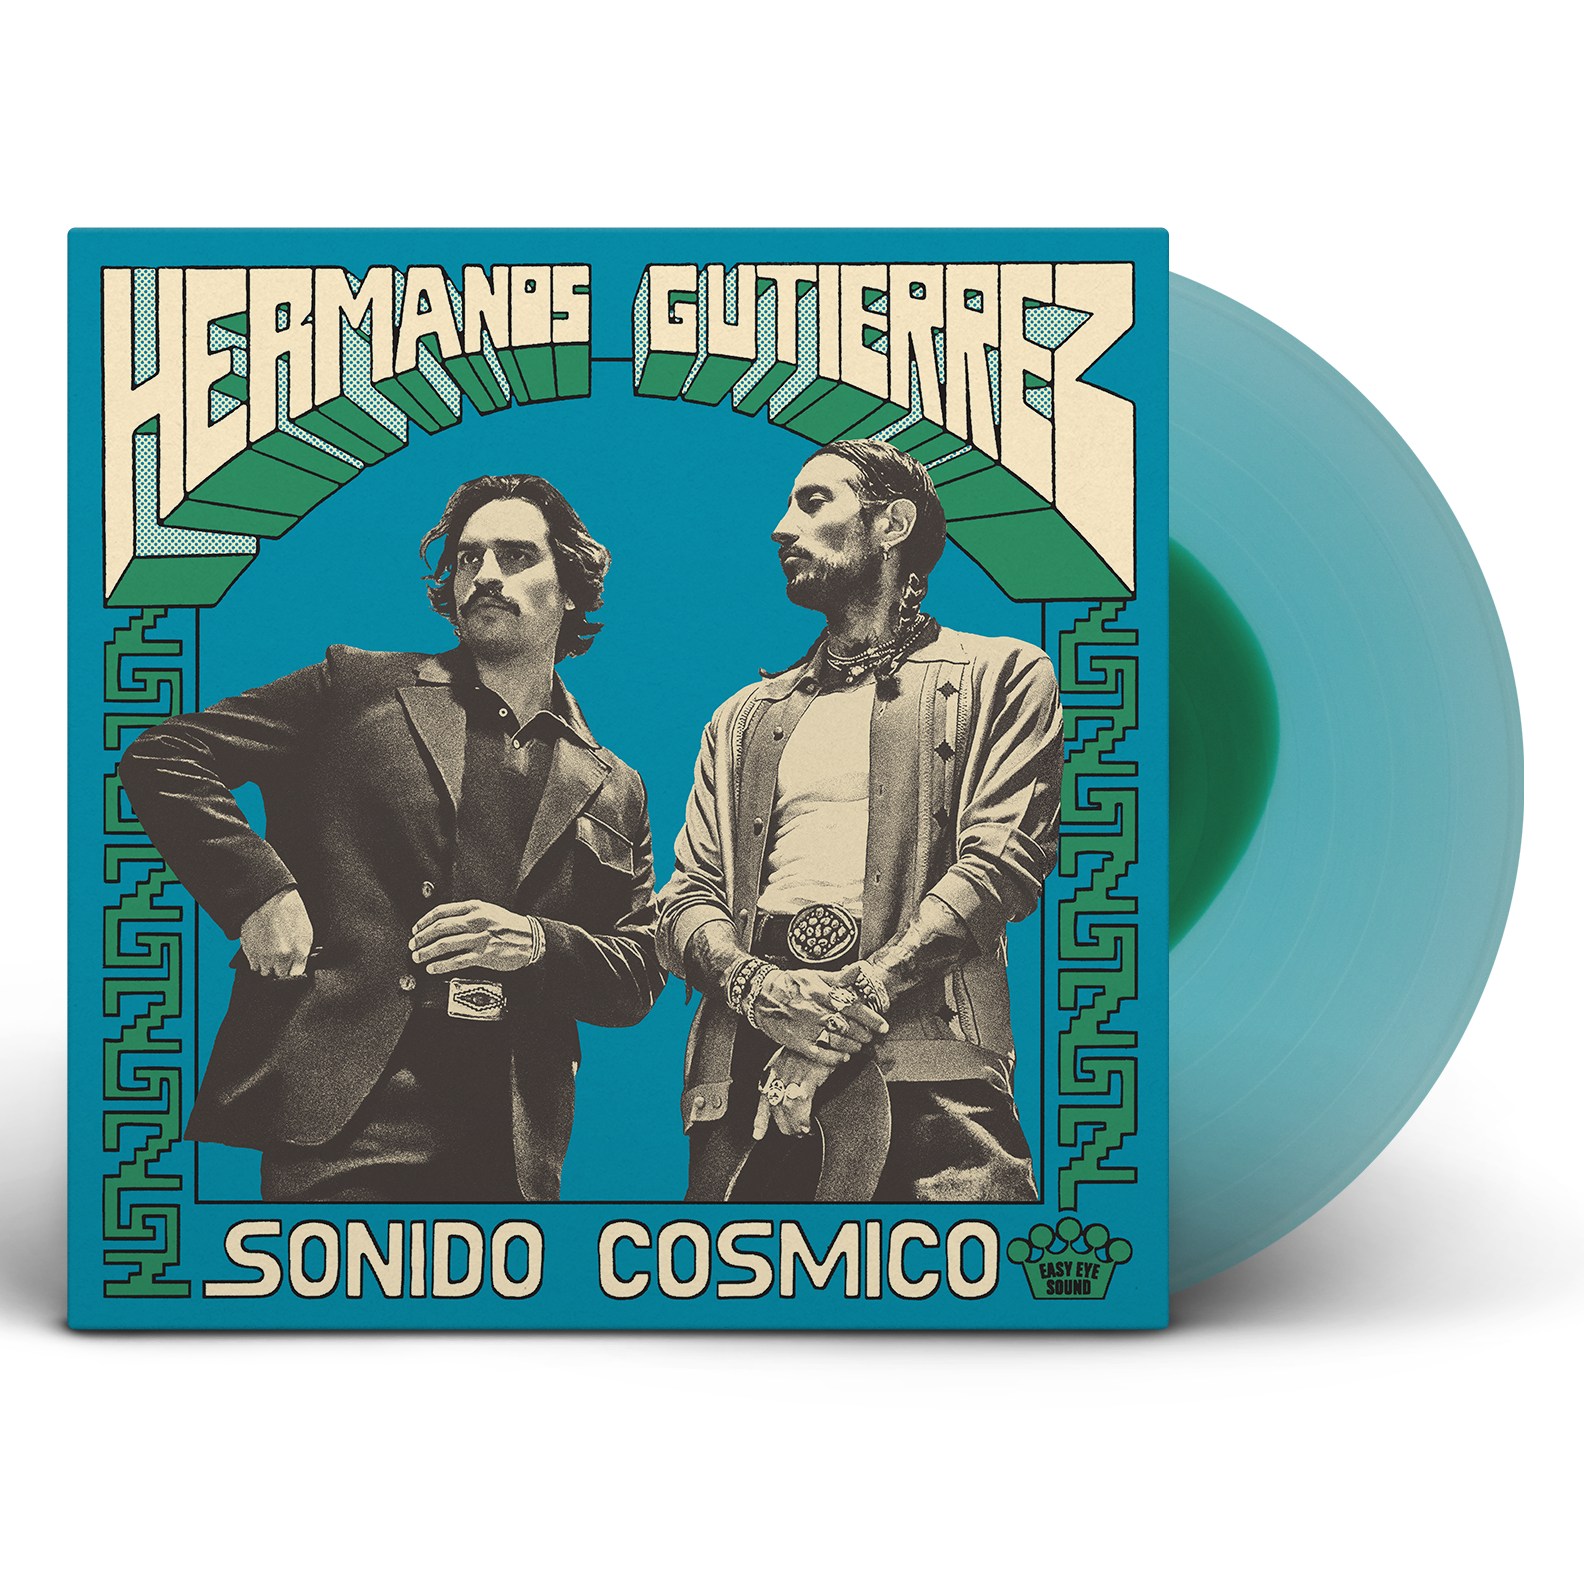 Sonido Cósmico [Easy Eye Sound Exclusive SIGNED Vinyl]